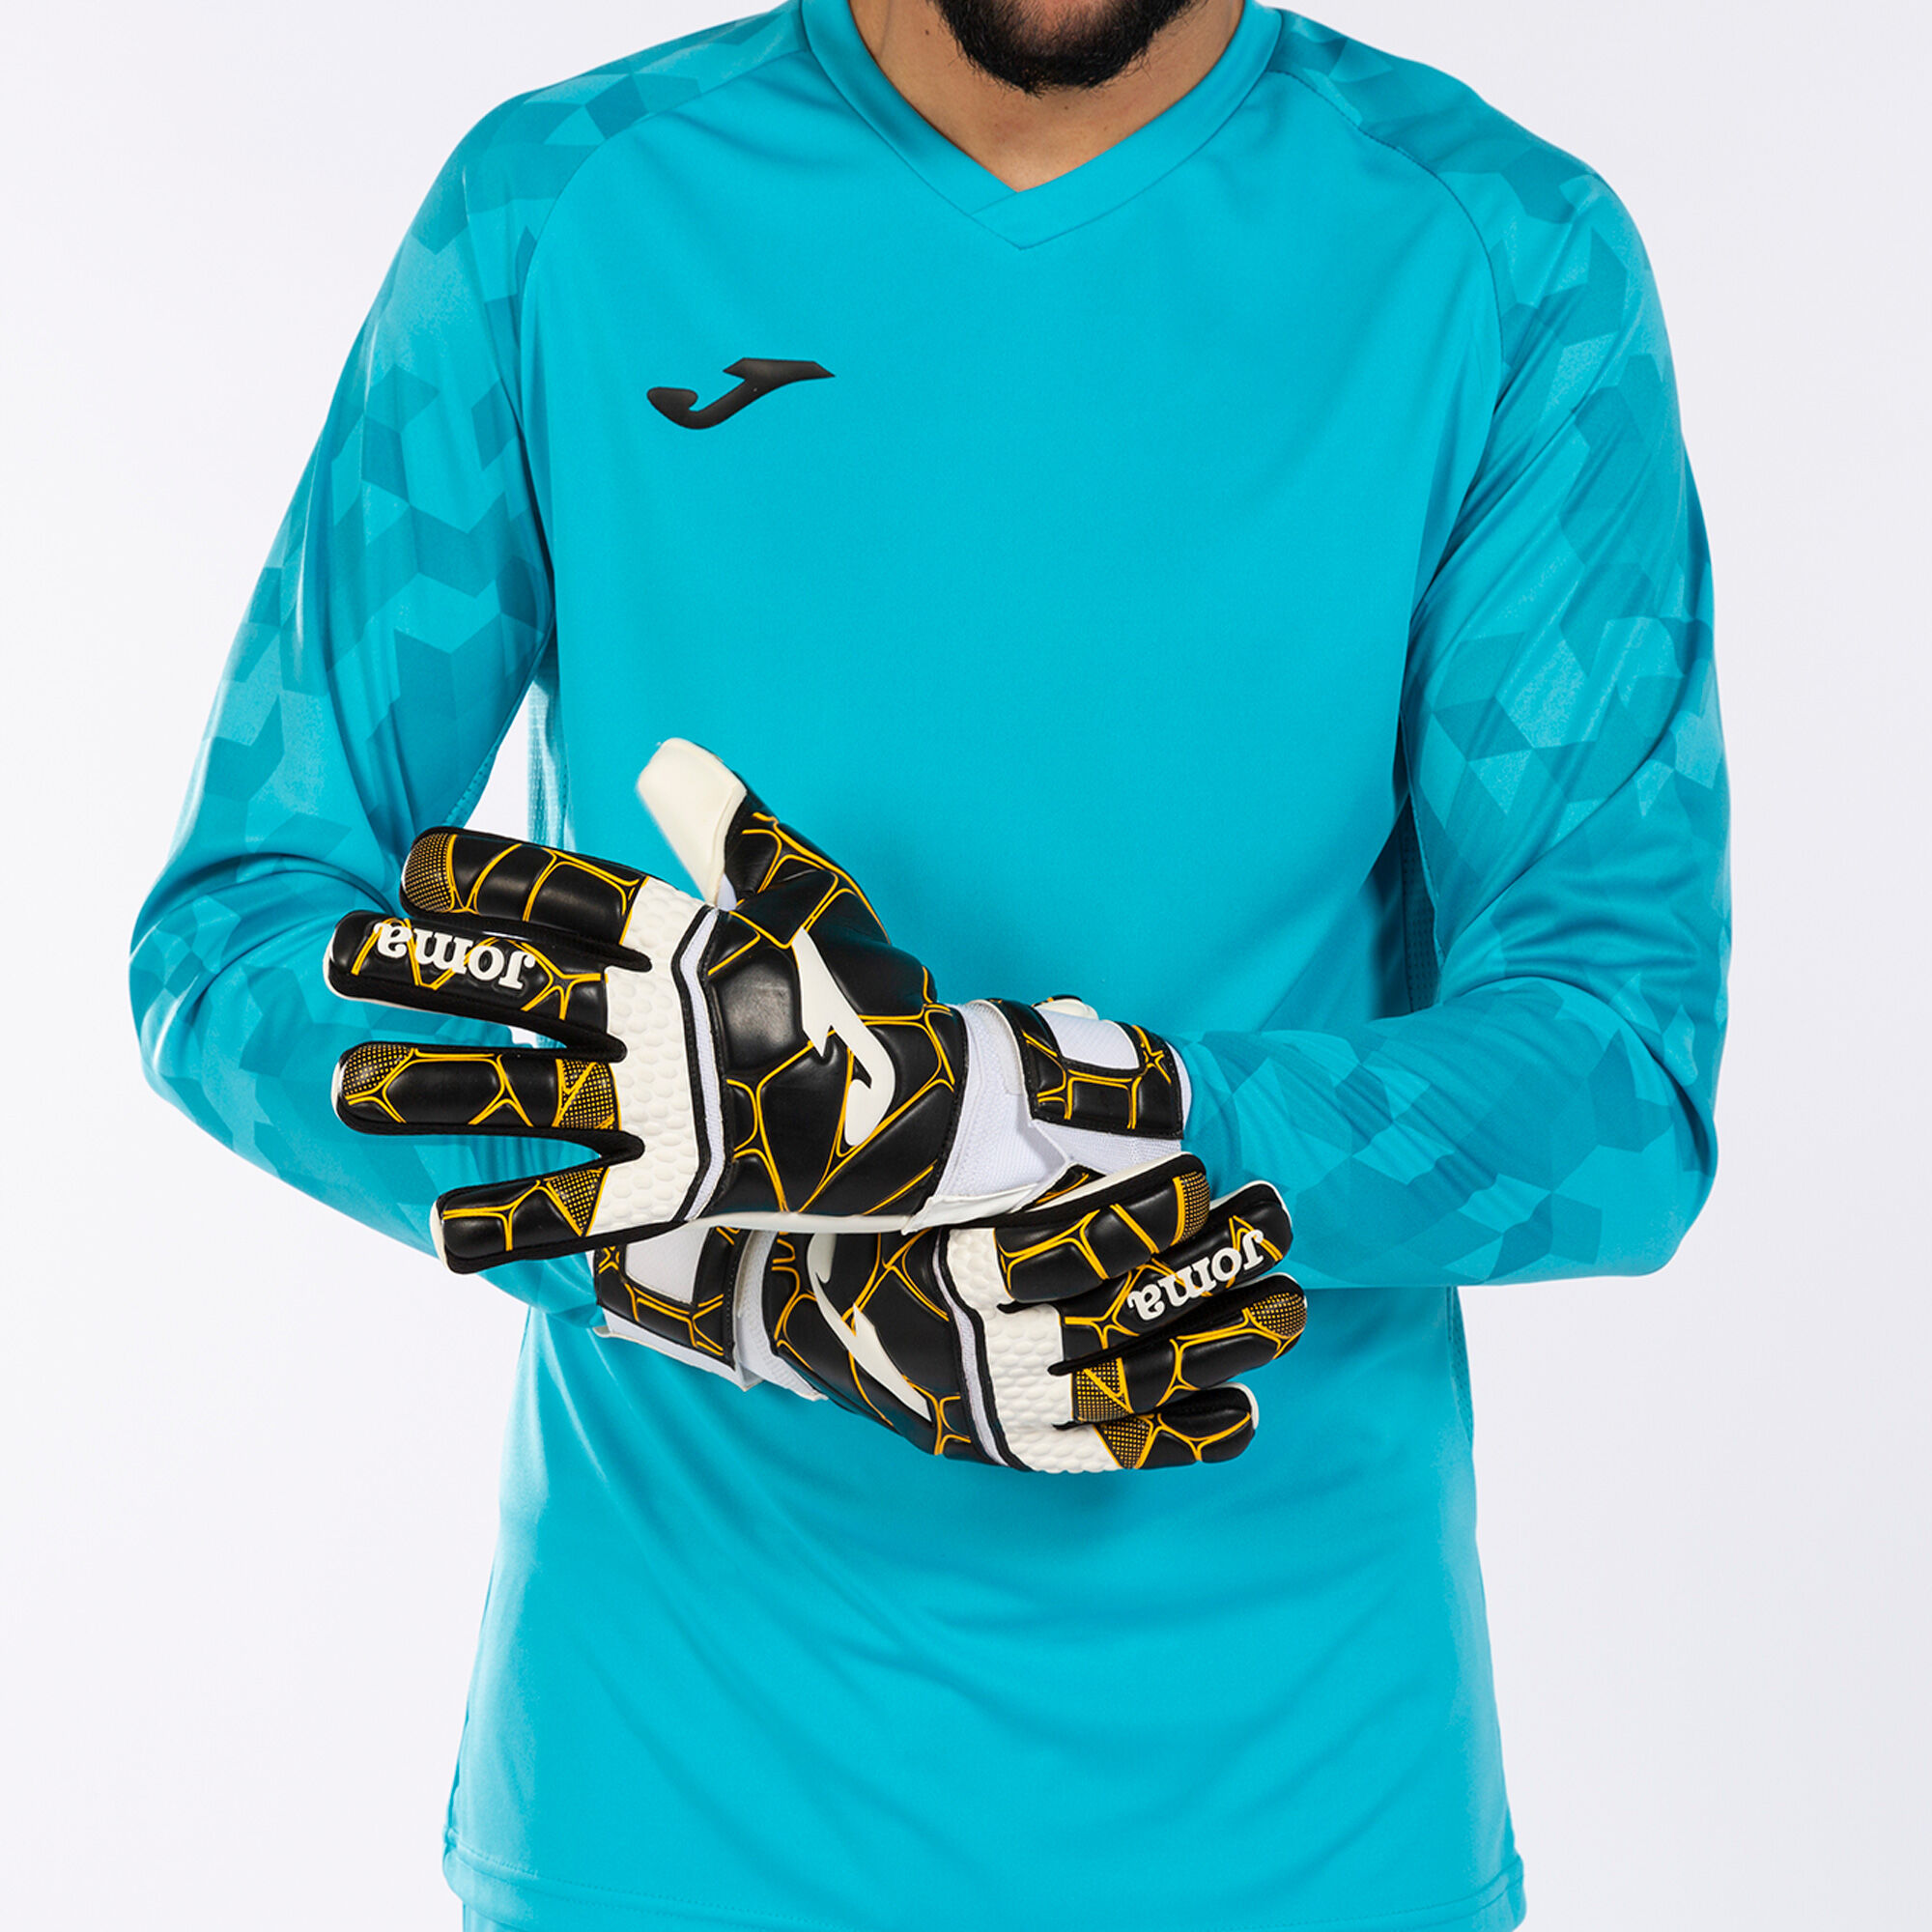 Football goalkeeper gloves Gk-Pro black gold